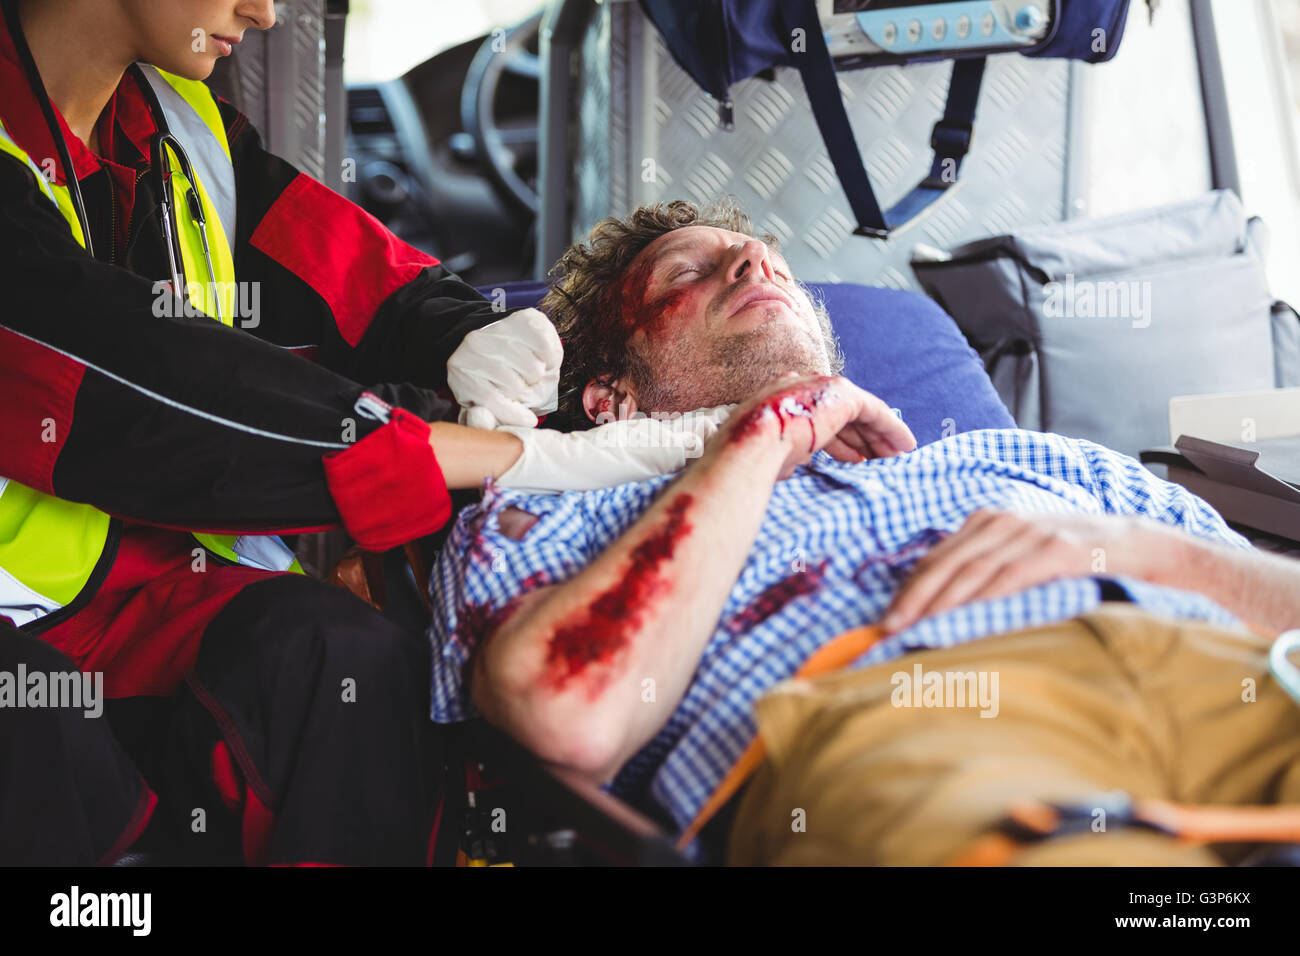 Injured man being taken care of ambulance crew Stock Photo